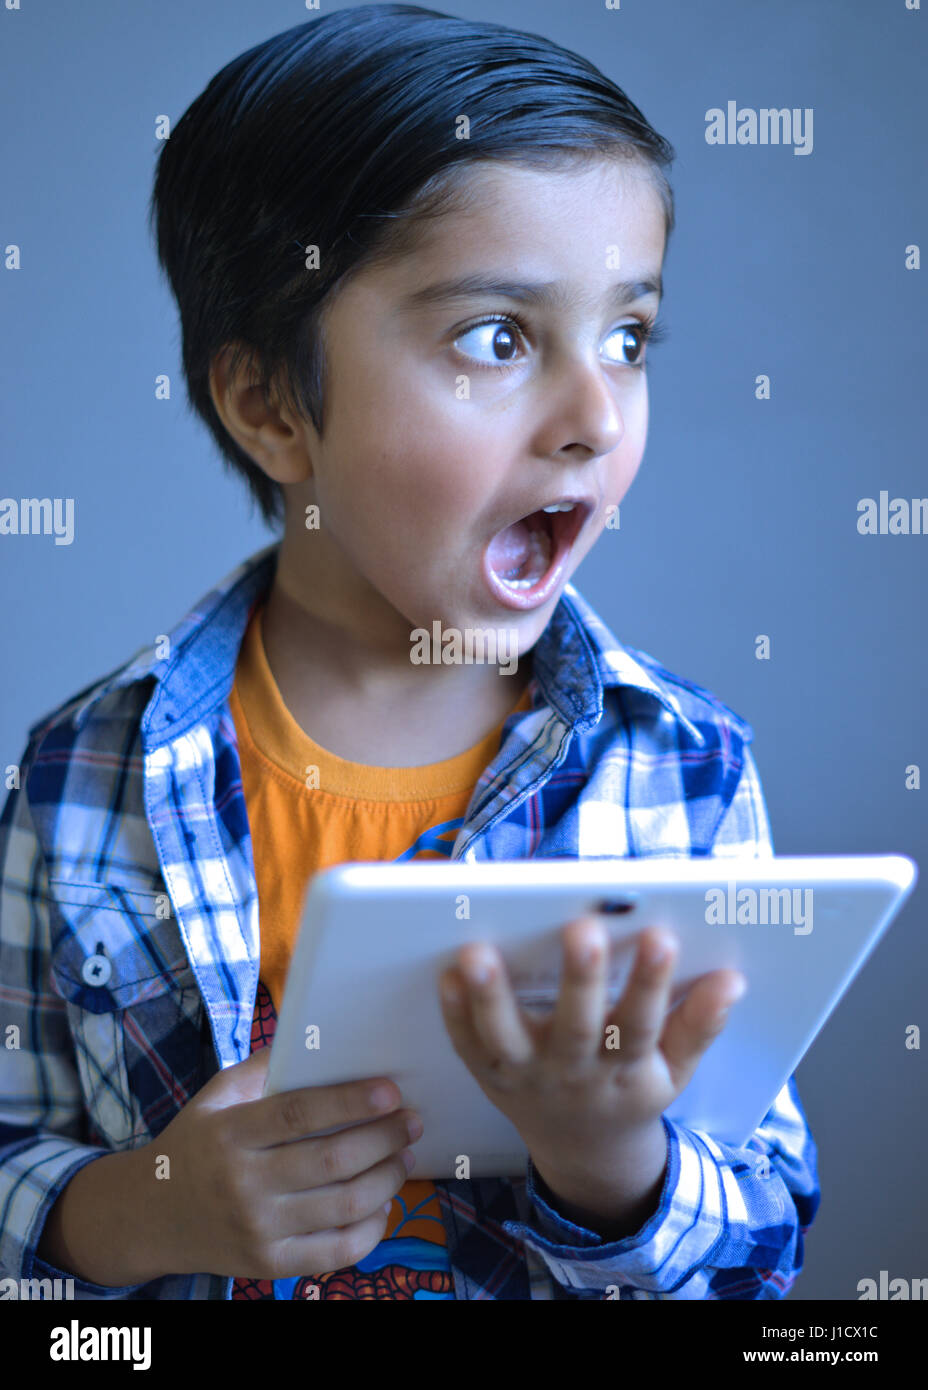 Il capretto con sguardo sorpreso in possesso di un computer tablet, guardando lontano dalla lente della fotocamera. Foto Stock